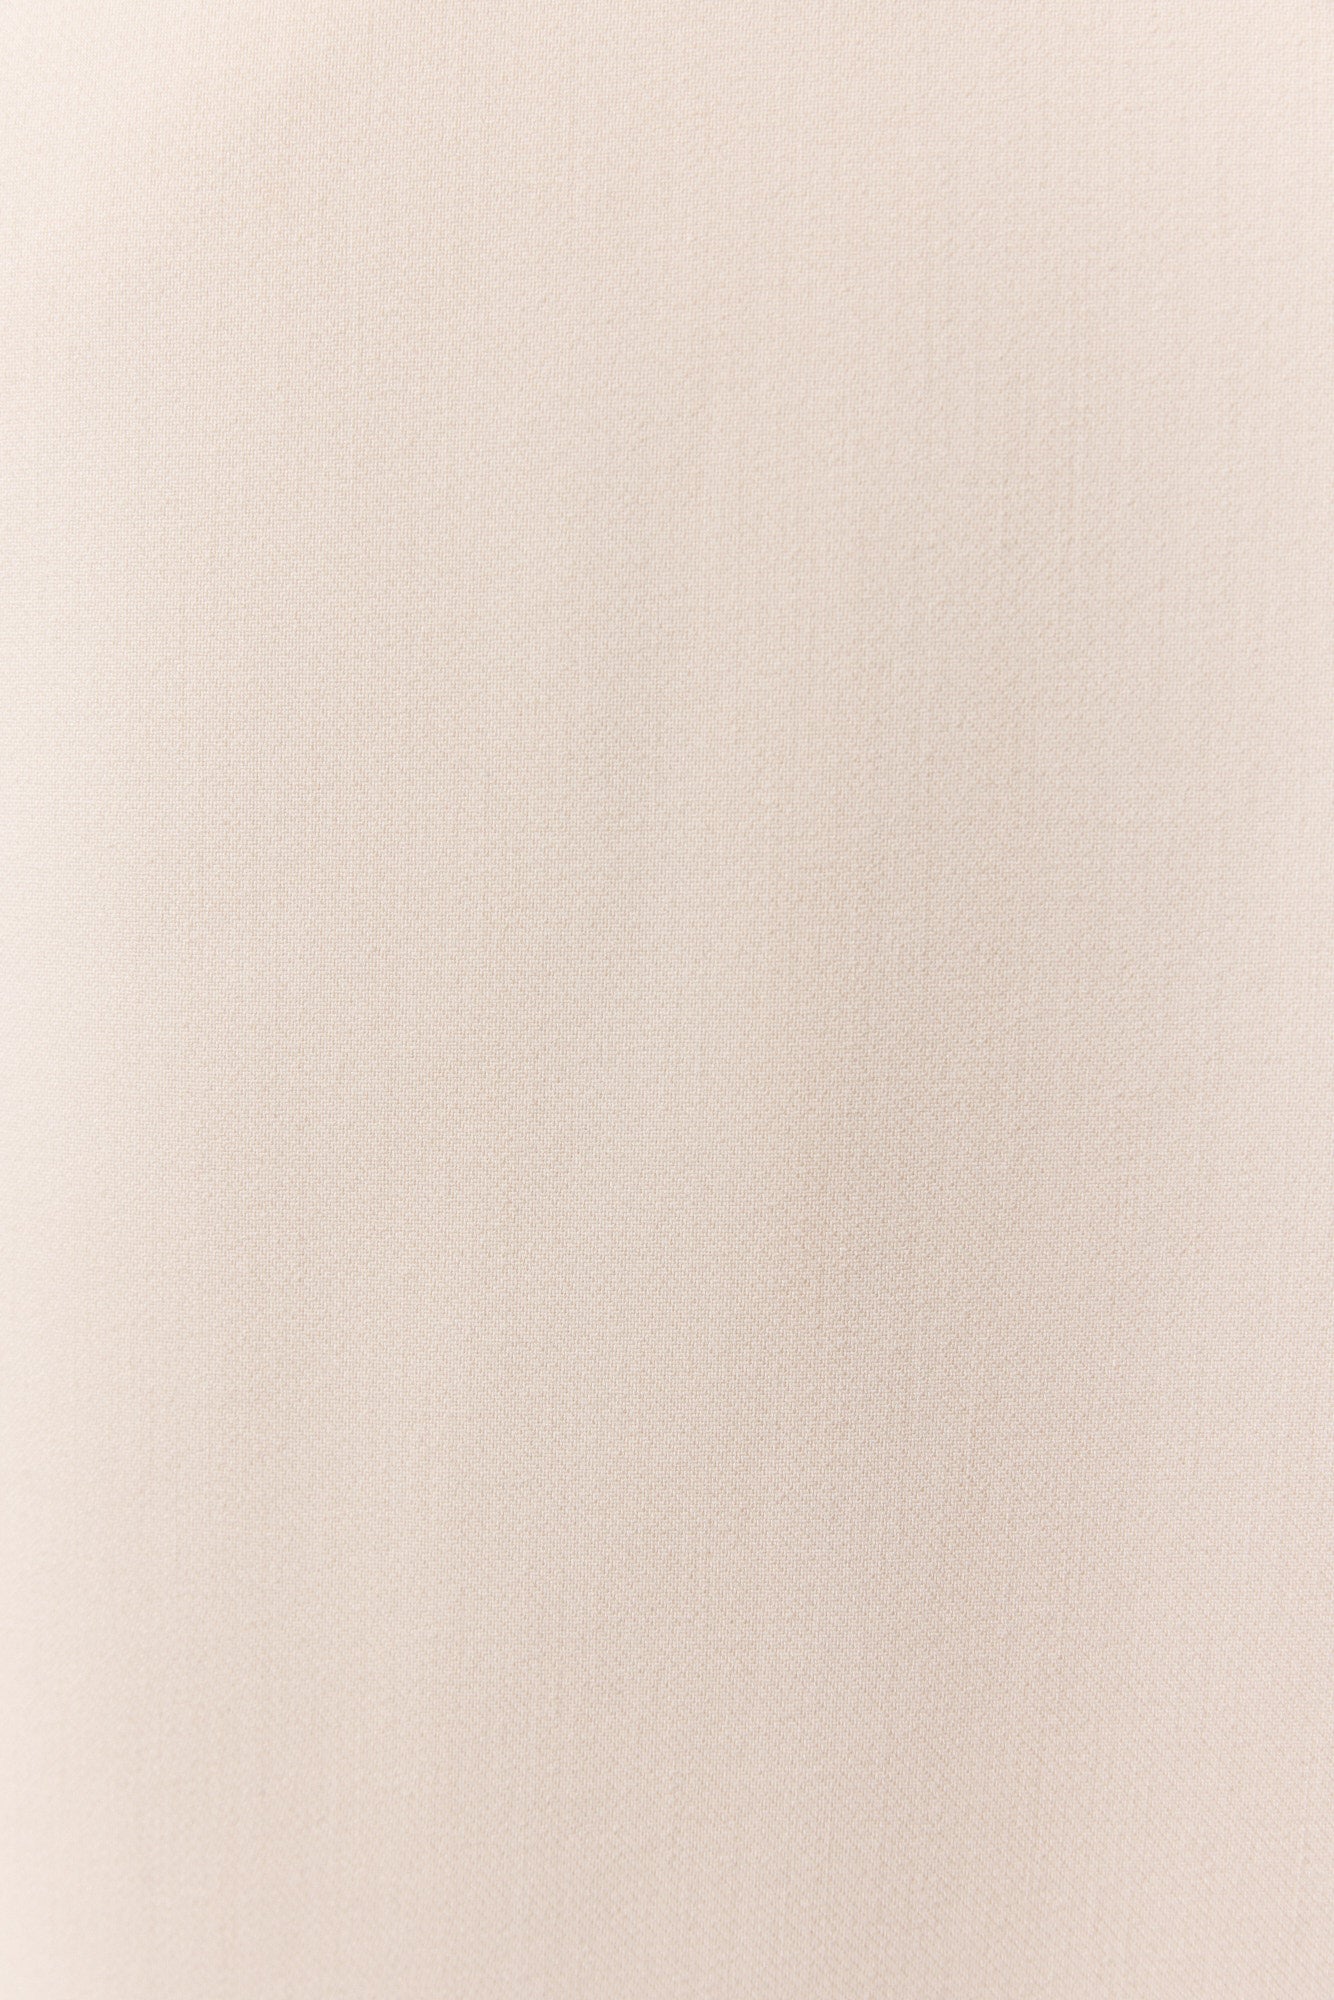 Veston long sans manches beige pâle | Atla JOELLE Collection